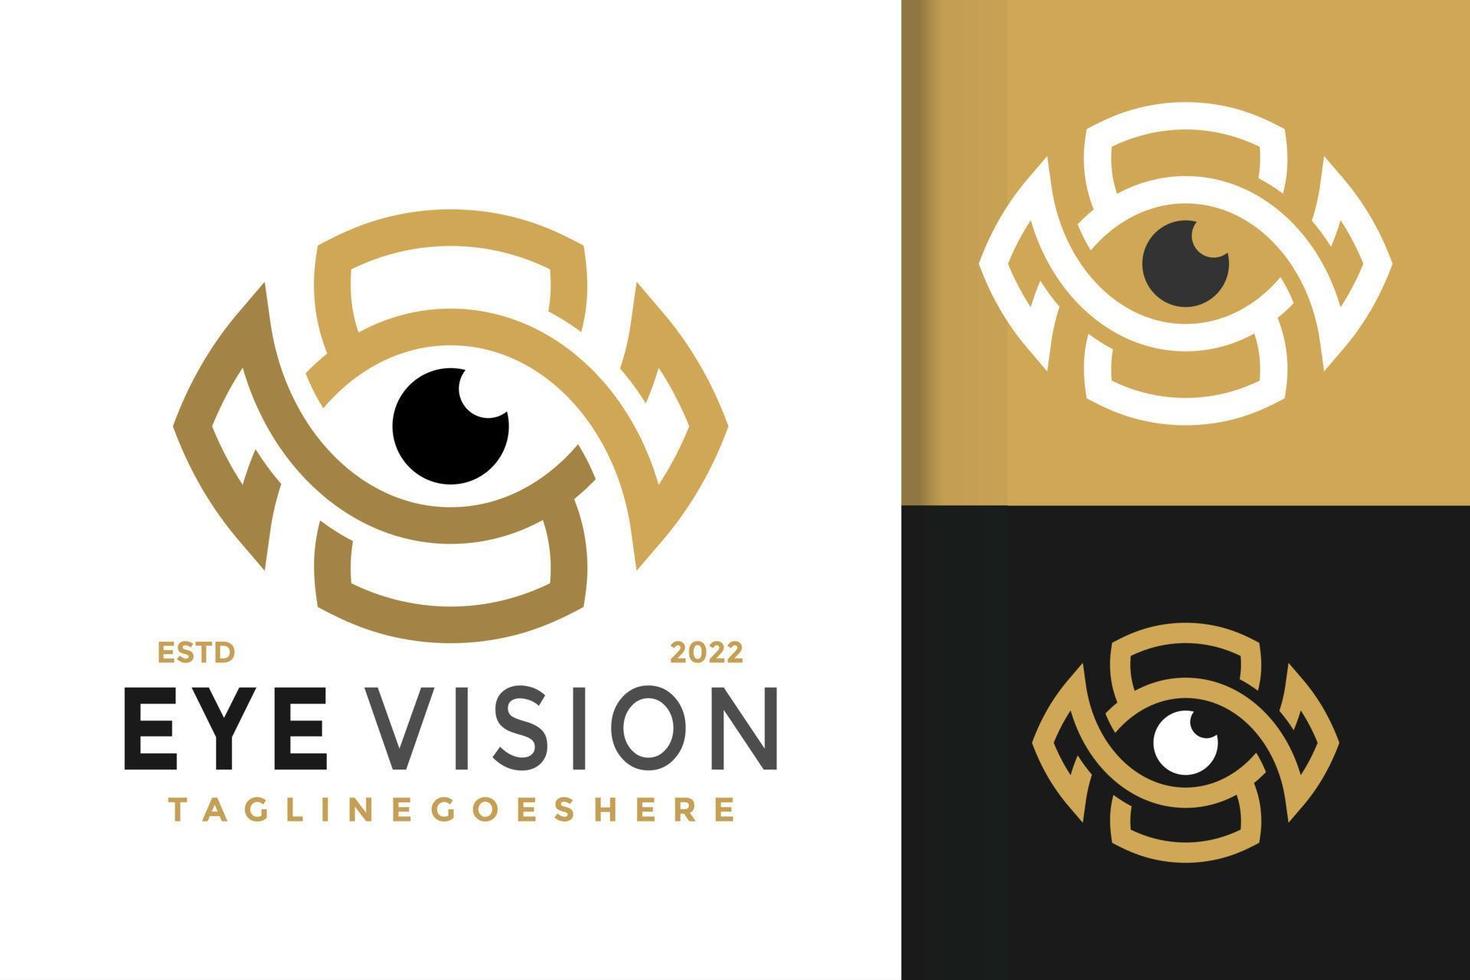 diseño abstracto del logotipo de visión ocular, vector de logotipos de identidad de marca, logotipo moderno, plantilla de ilustración vectorial de diseños de logotipos